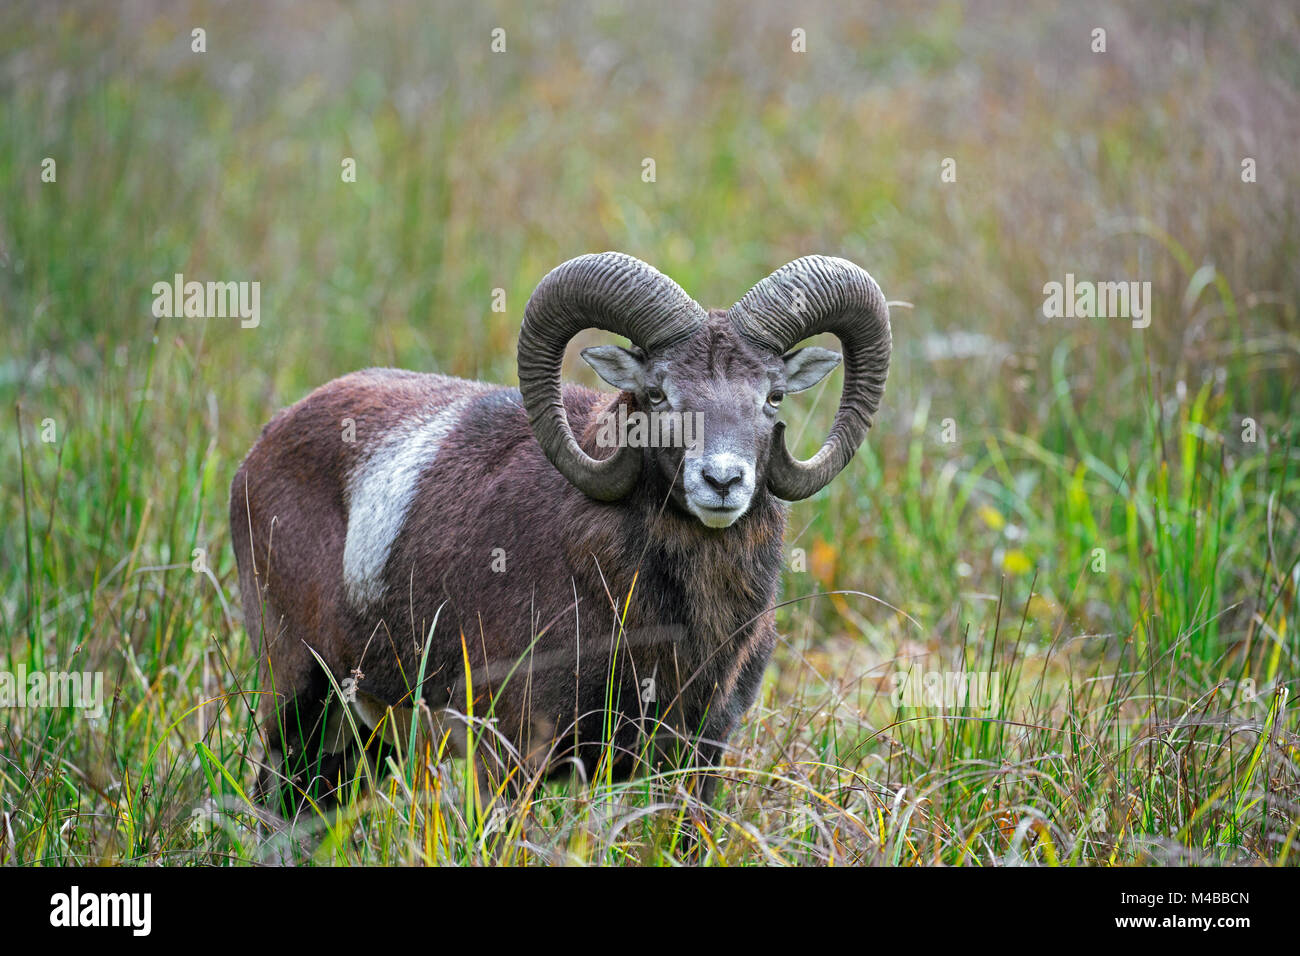 Mouflon (Ovis gmelini européenne / Ovis ammon musimon / Ovis orientalis musimon) ram avec grandes cornes dans les prairies à l'automne Banque D'Images